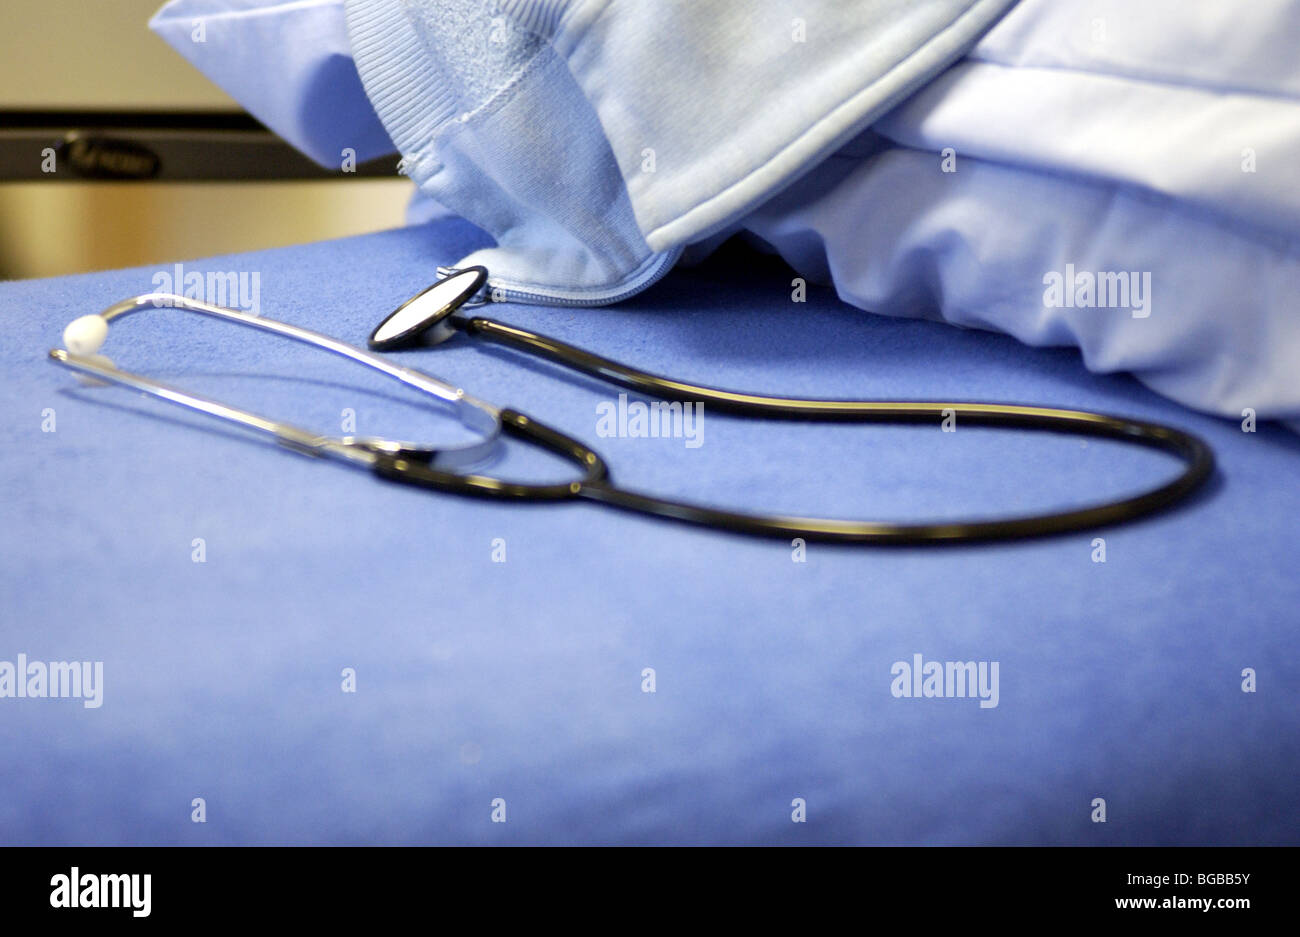 Image libre photo de stéthoscope sur NHS hospital bed Banque D'Images